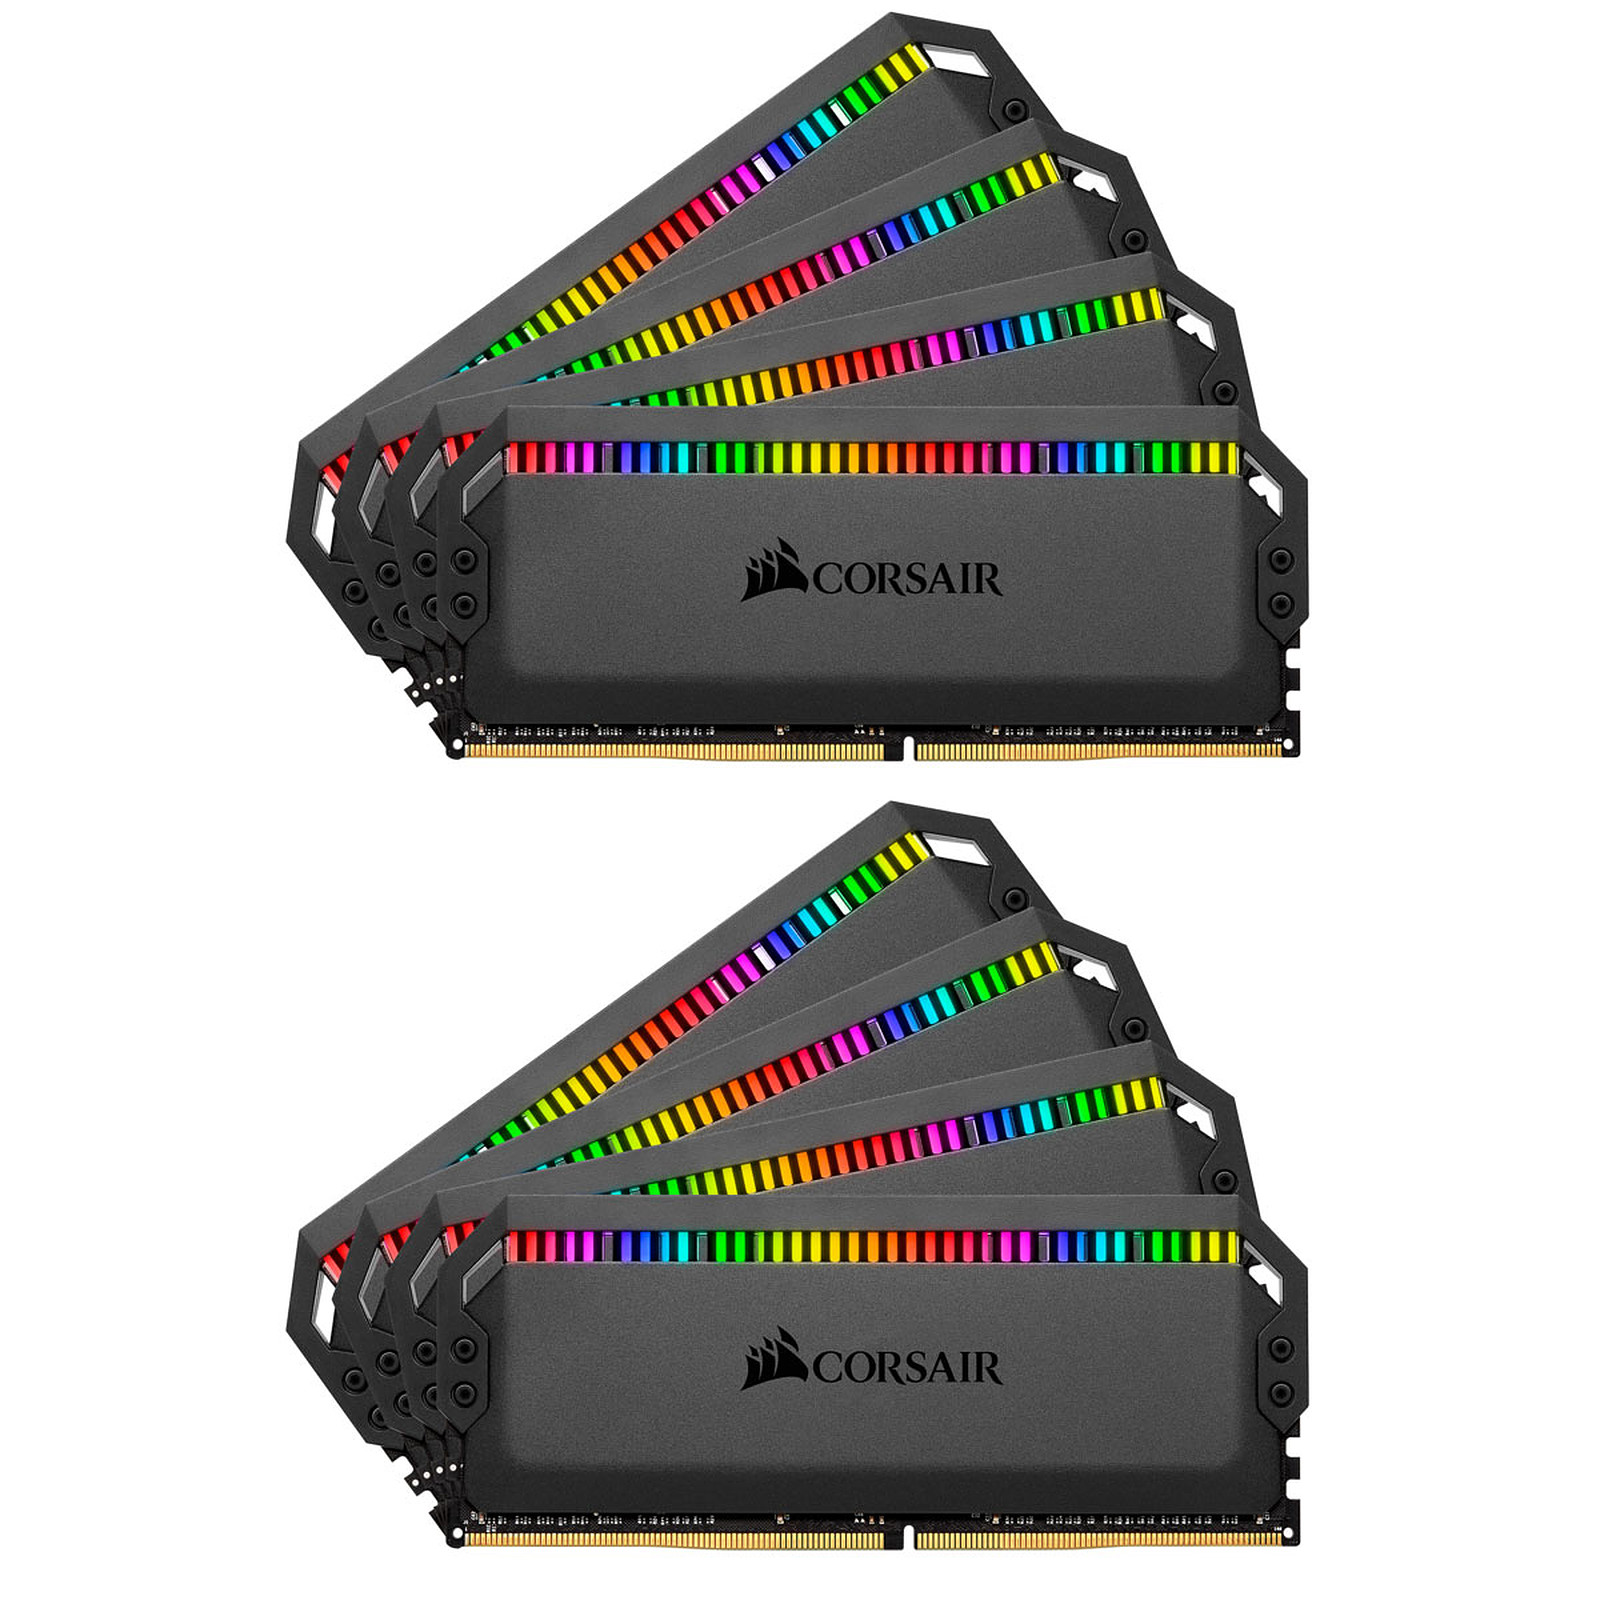 Corsair Dominator Platinum RGB 128 Go (8x 16Go) DDR4 3600 MHz CL18 - Memoire PC Corsair